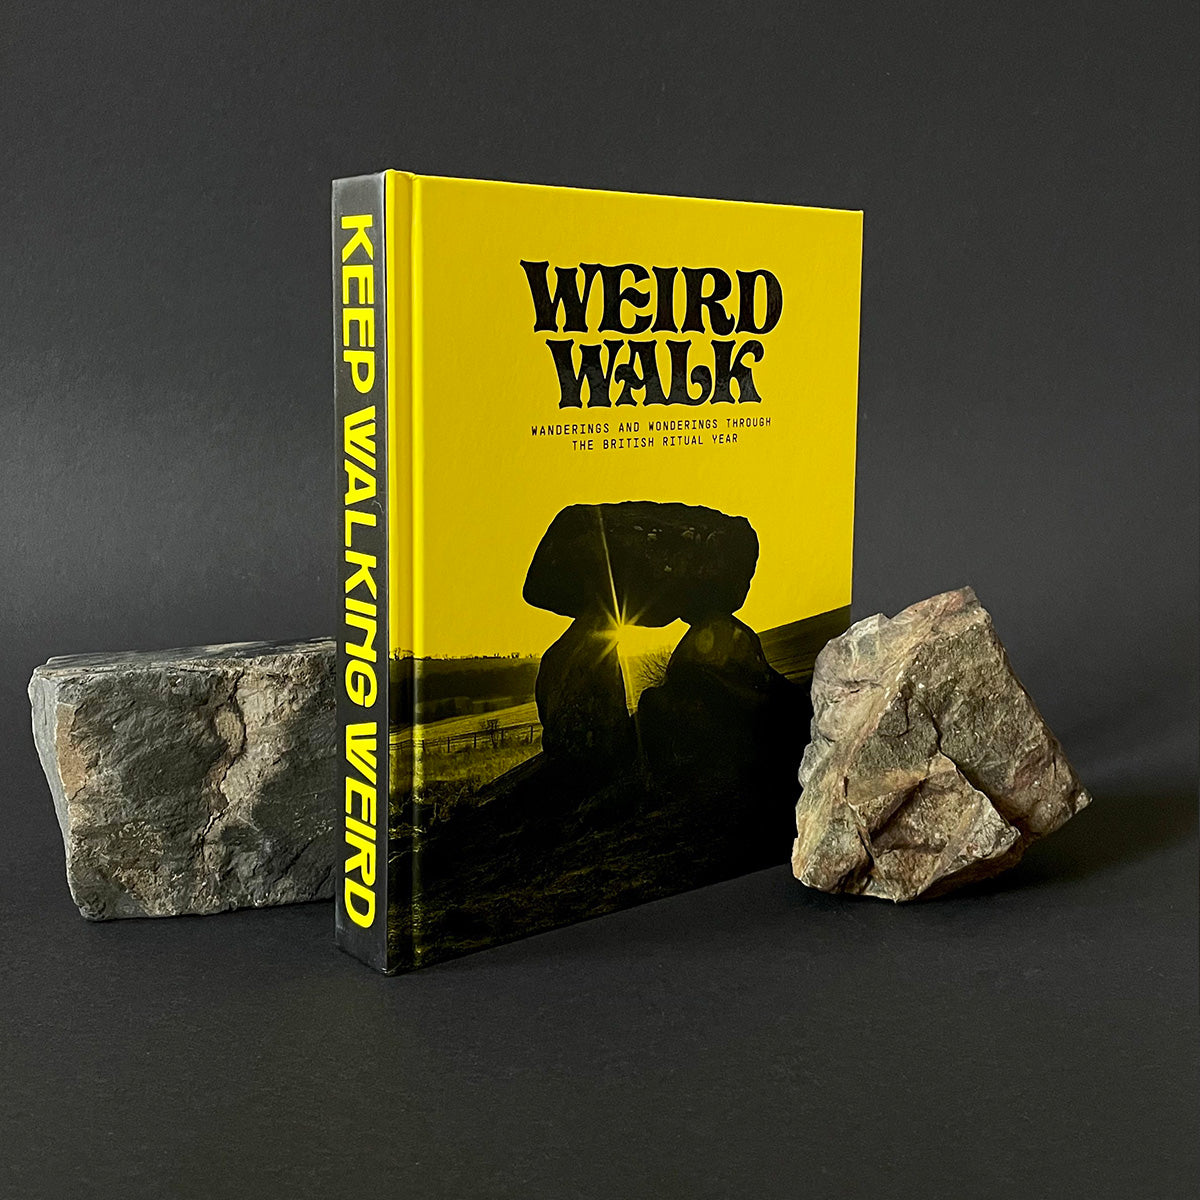 Weird Walk: The Book